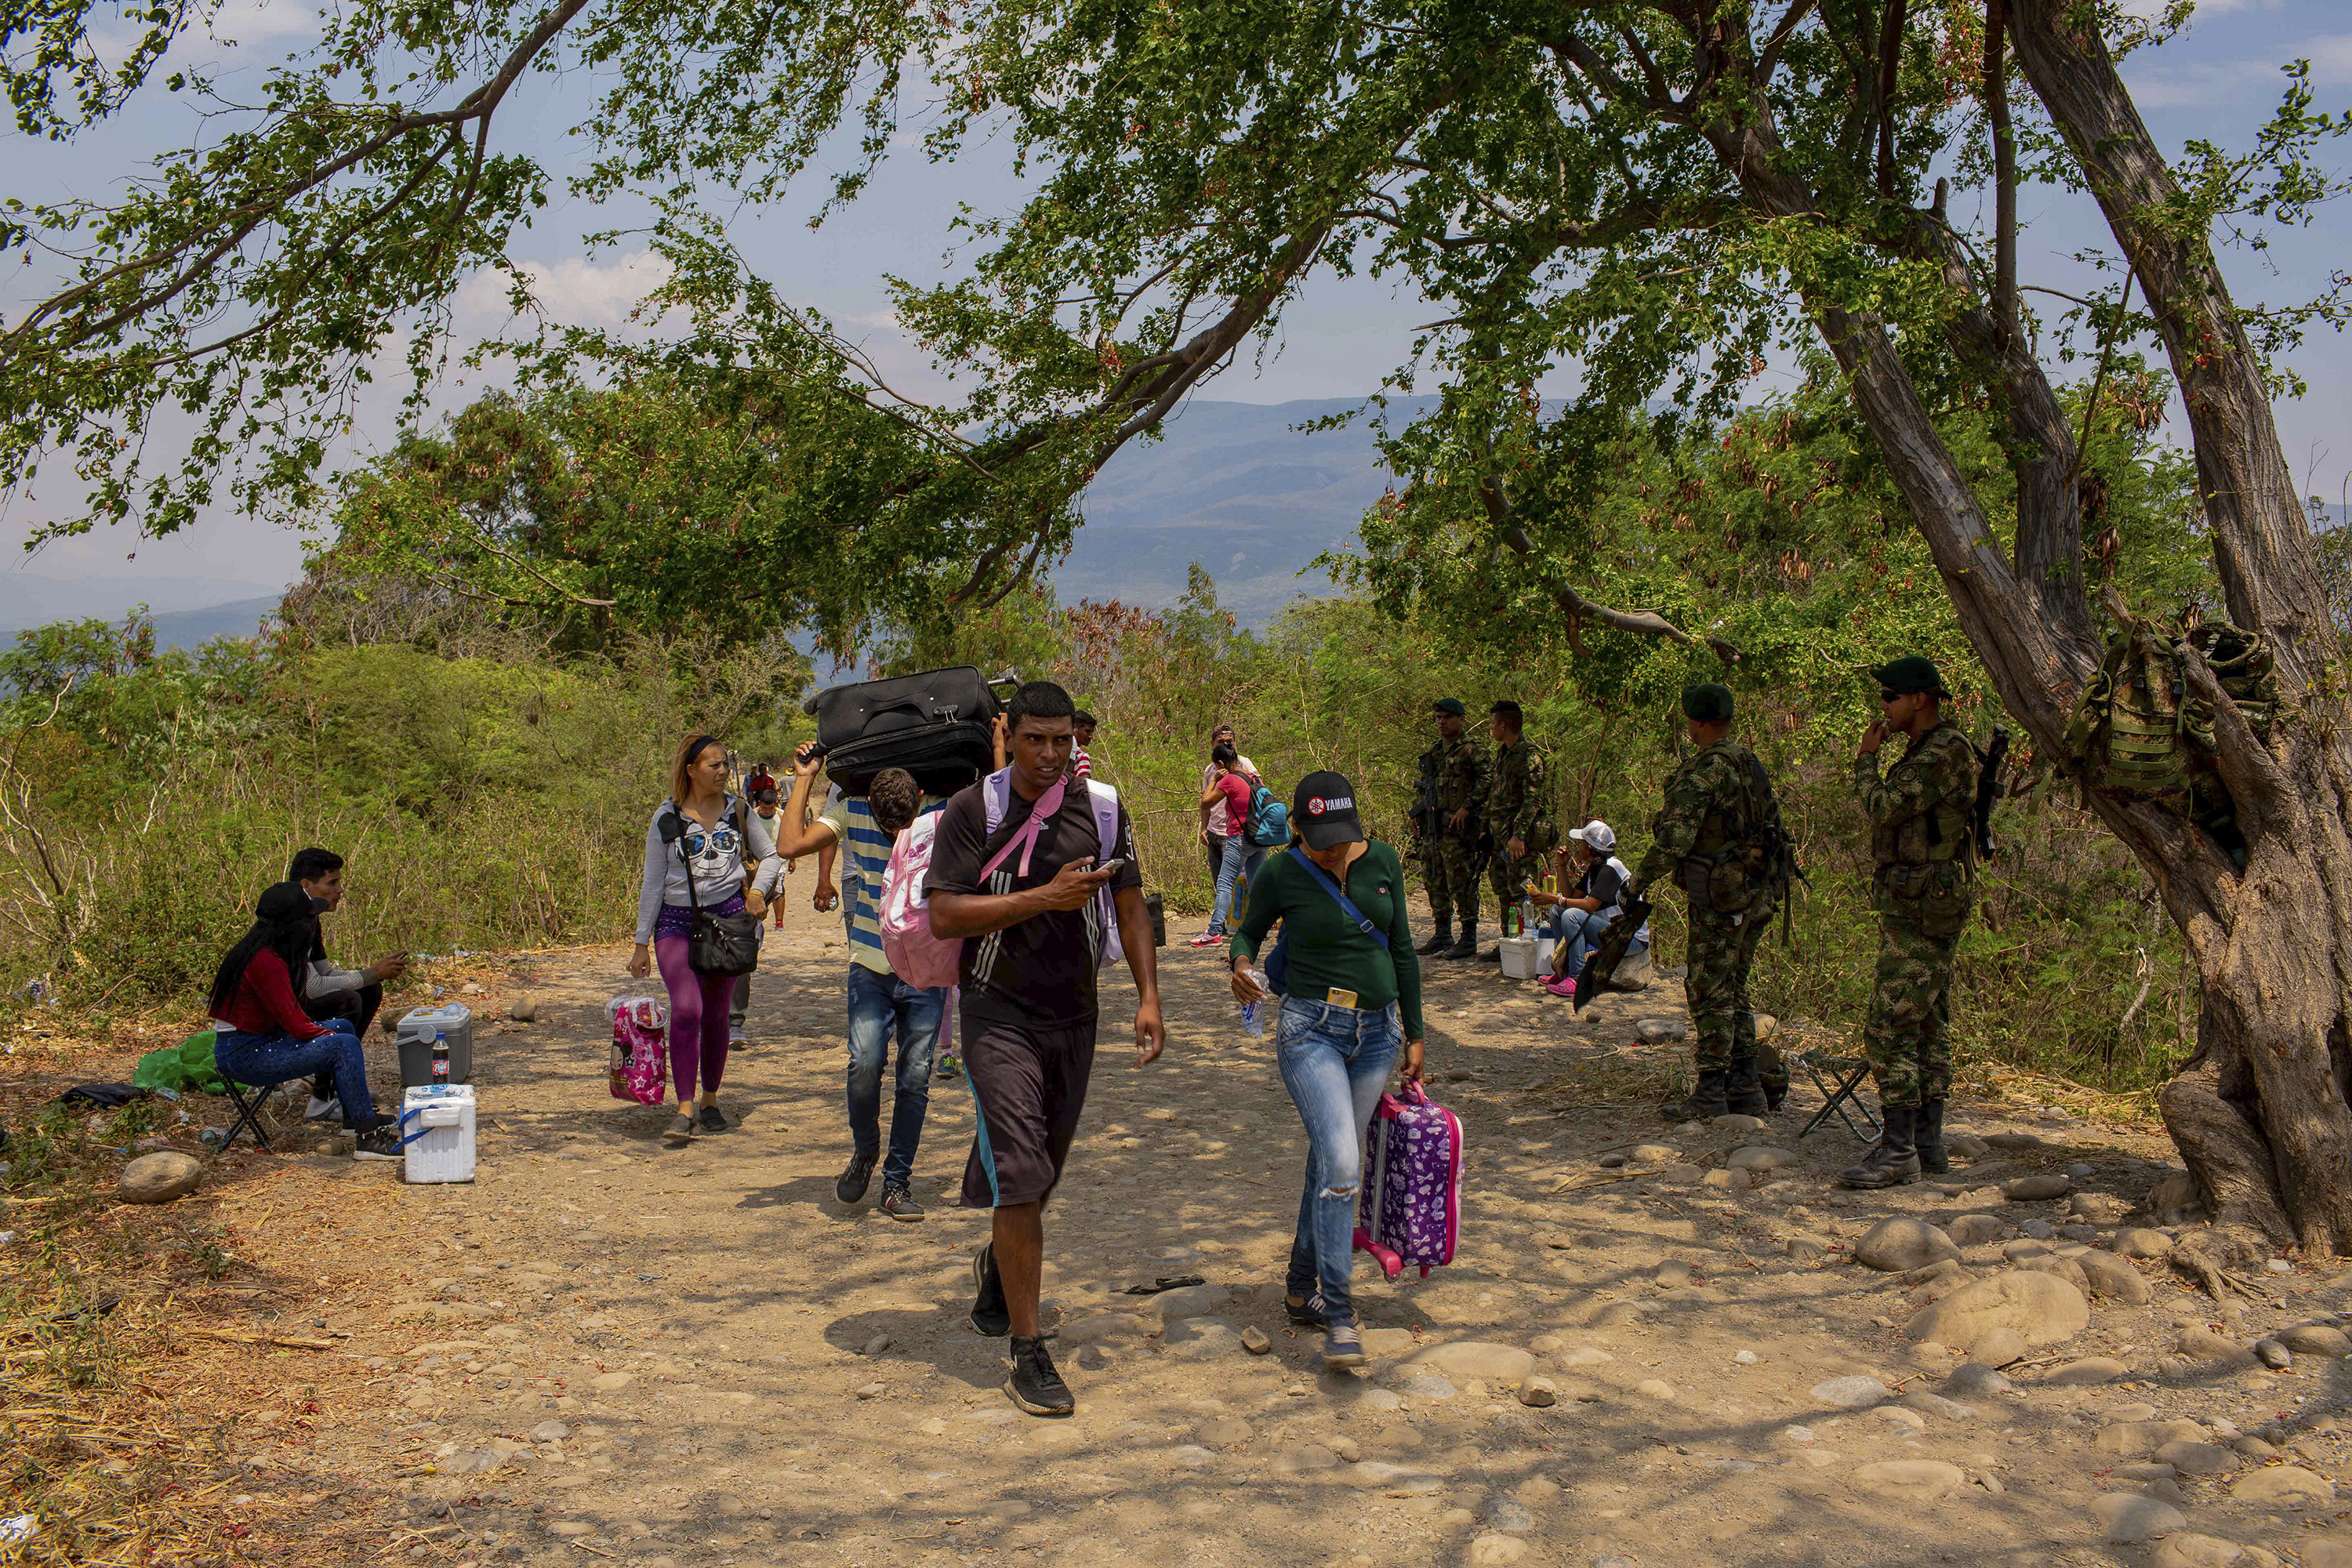 Soldados colombianos ficam de prontidão nas ‘trochas’, as passagens ilegais entre a Venezuela e a Colômbia, aguardando a deserção de militares do país vizinho – 27/02/2019